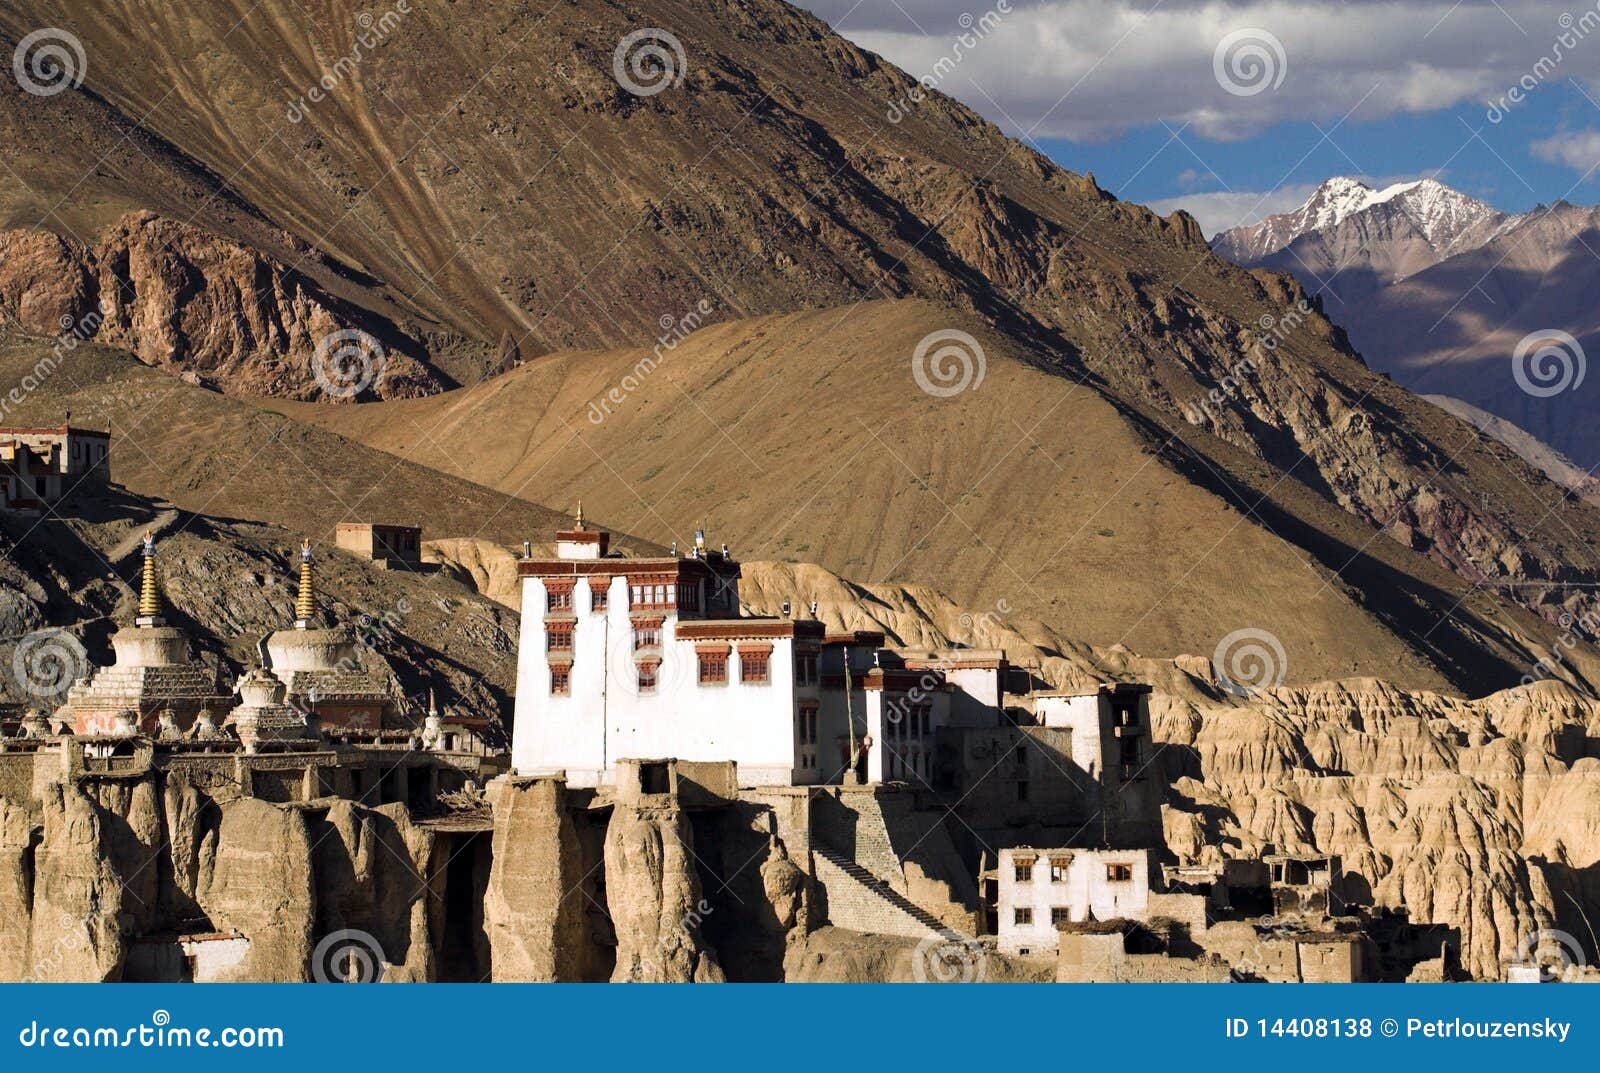 lamayuru buddhist monastery in ladakh